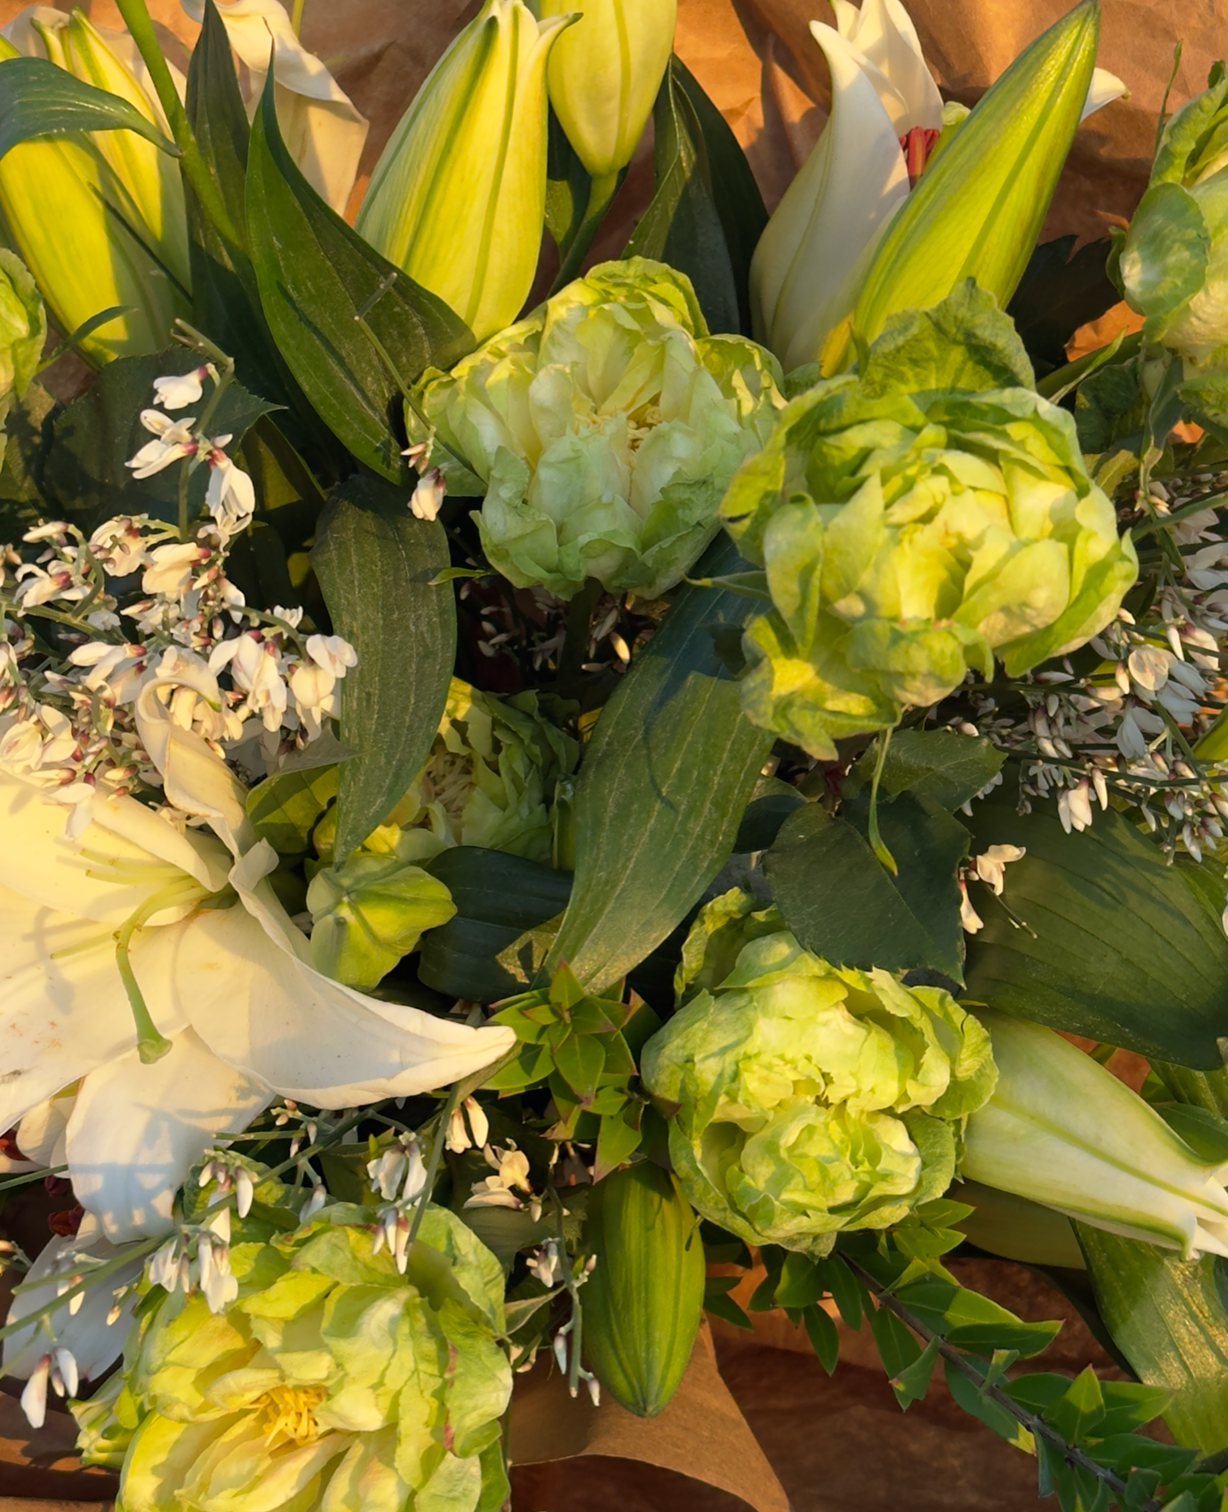 Bouquet “Veggie” - veggie roses, lilies